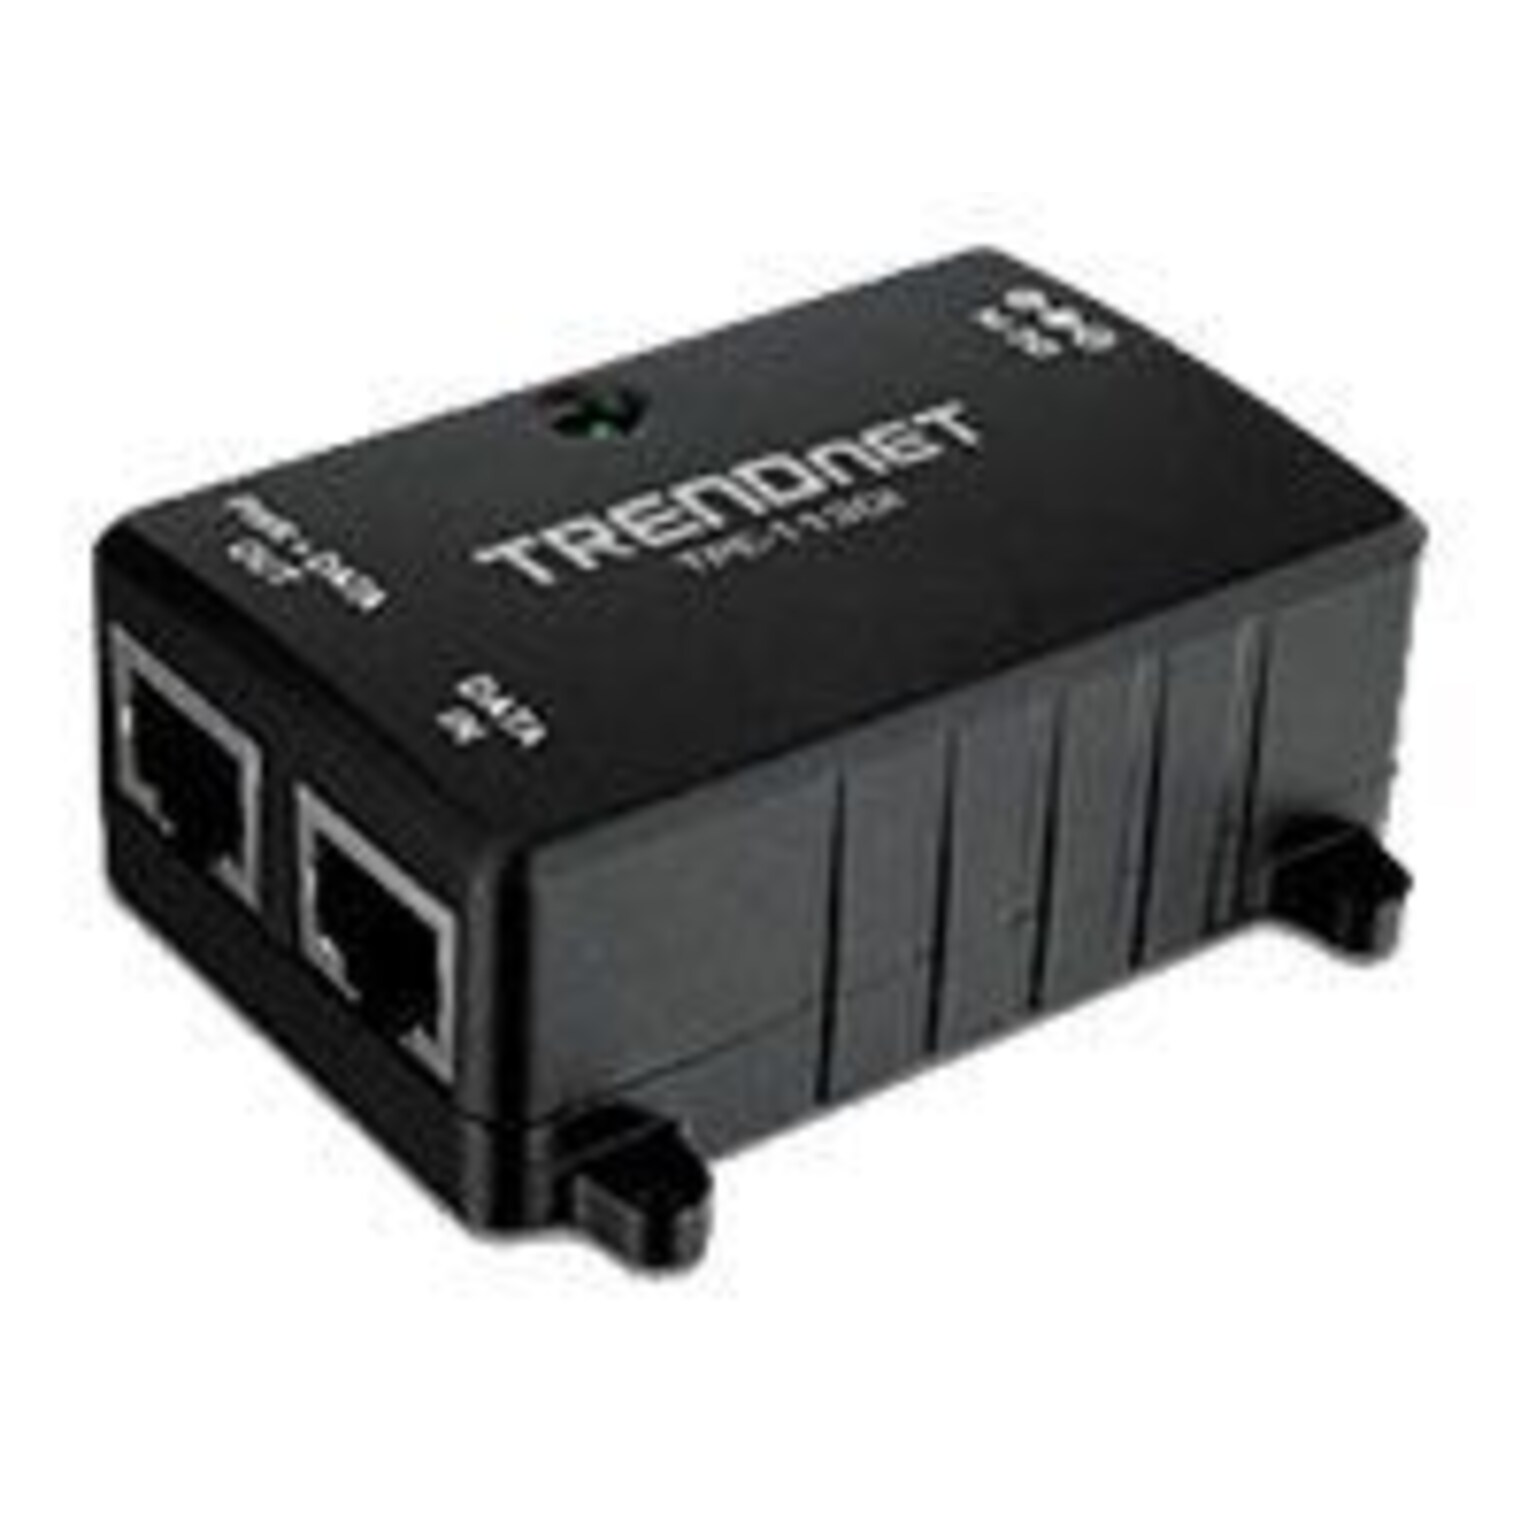 TRENDnet® 15.4 W Gigabit PoE Injector; TPE-113GI